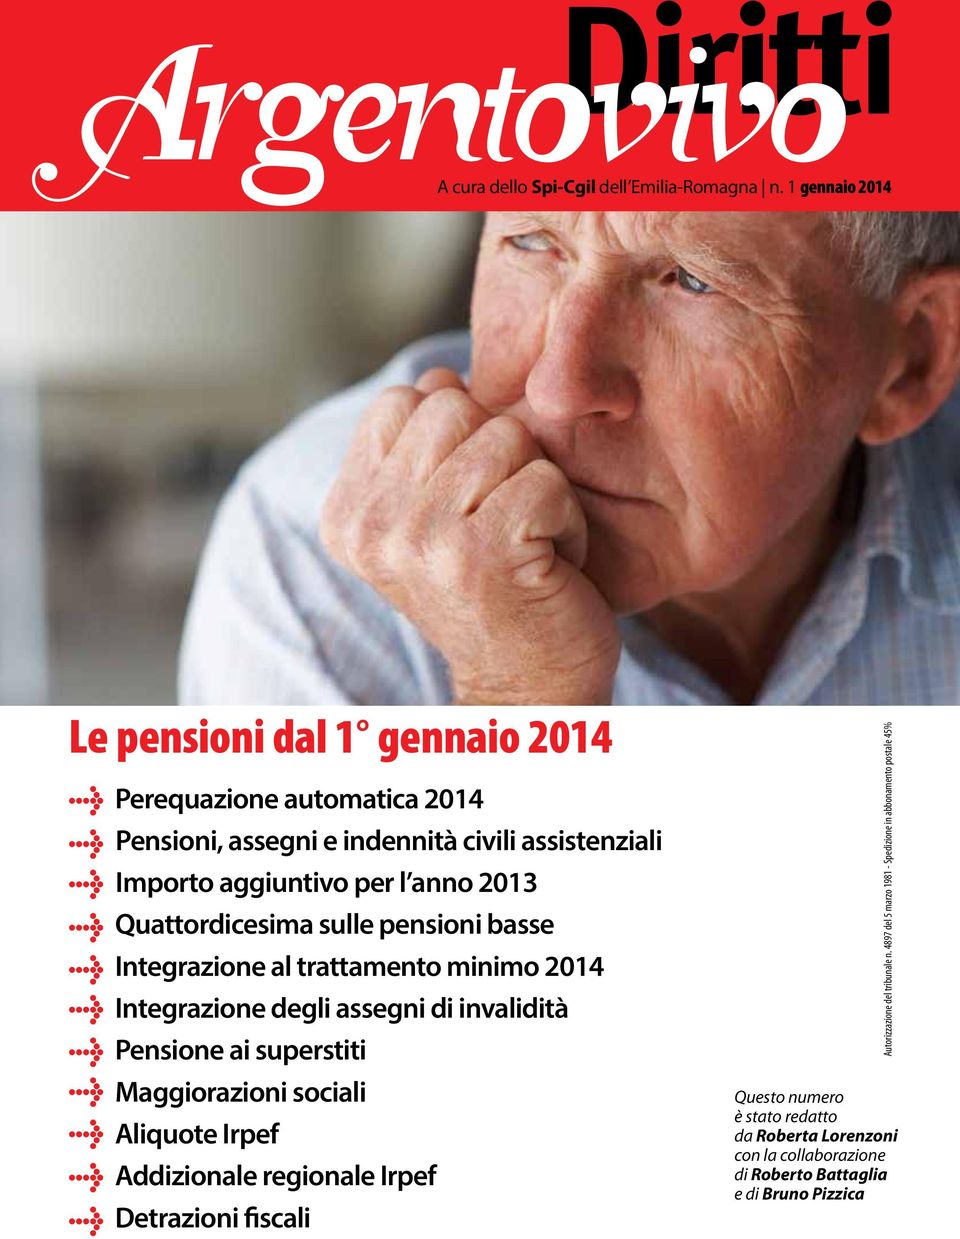 2013 Quattordicesima sue pensioni basse Integrazione a trattamento minimo 2014 Integrazione degi assegni di invaidità Pensione ai superstiti Maggiorazioni